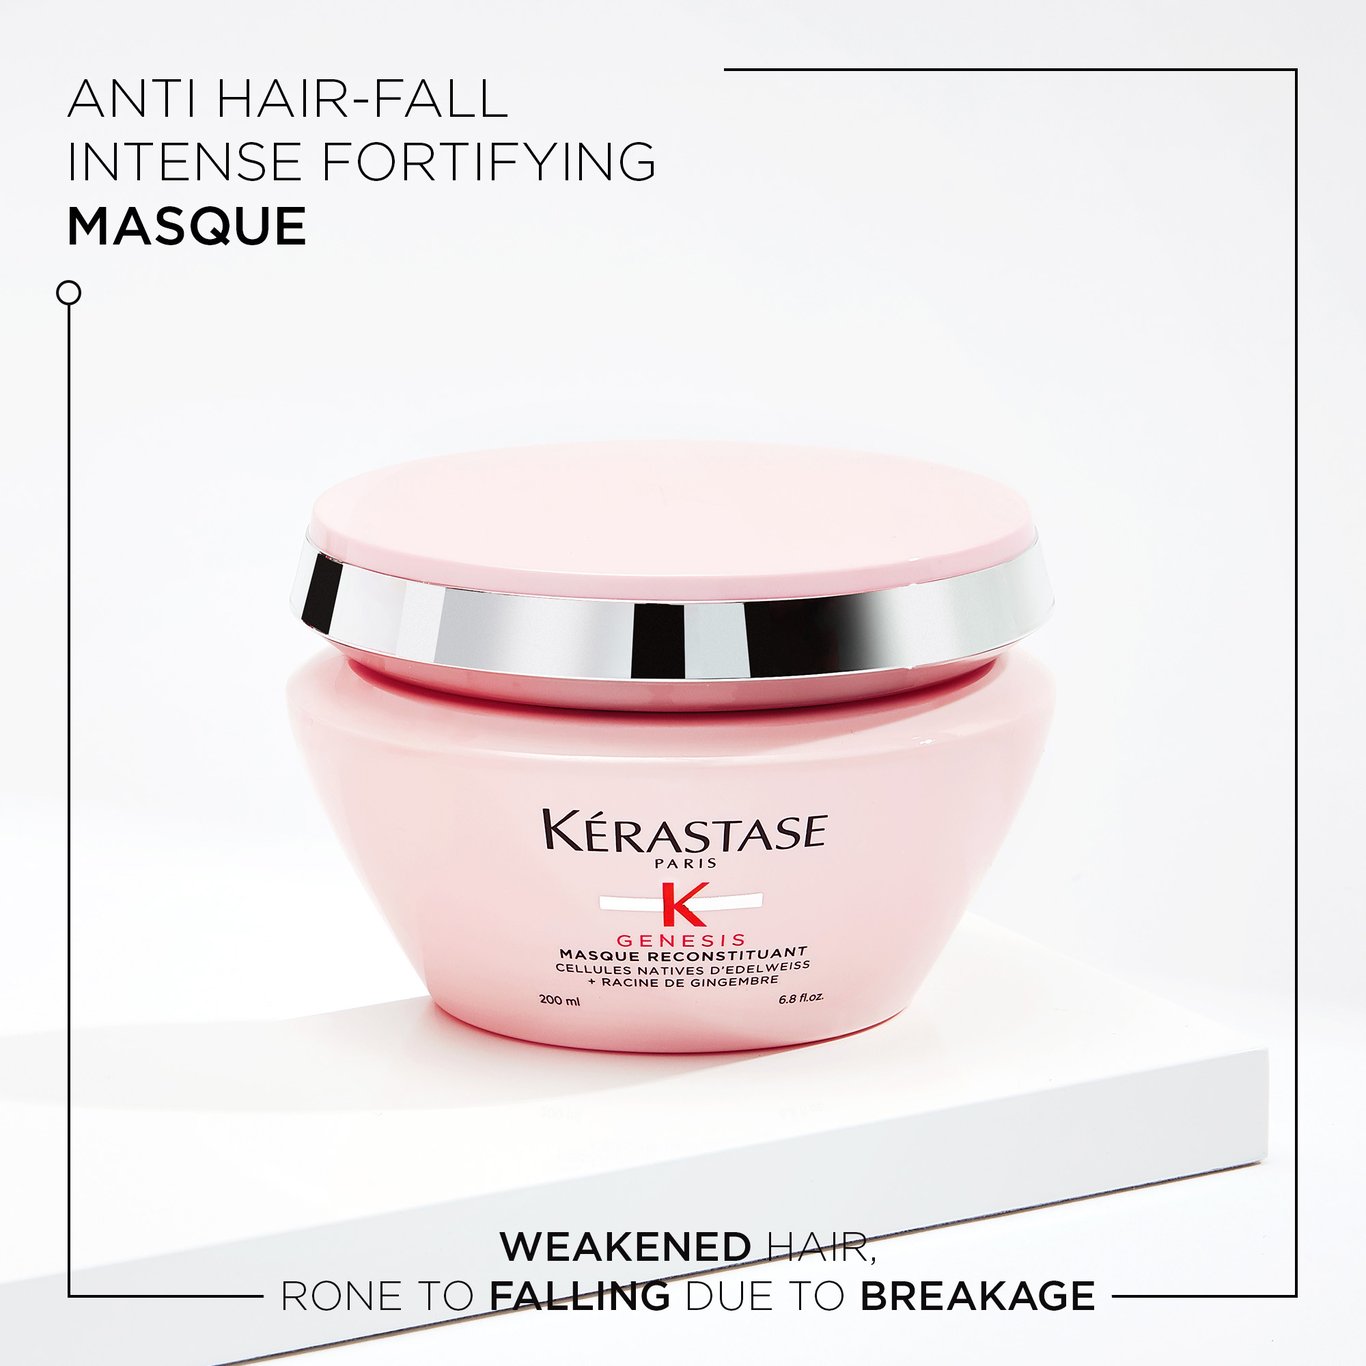 Anti hair-fall intense fortifying Masque. Weakened hair, rone to falling due to breakage